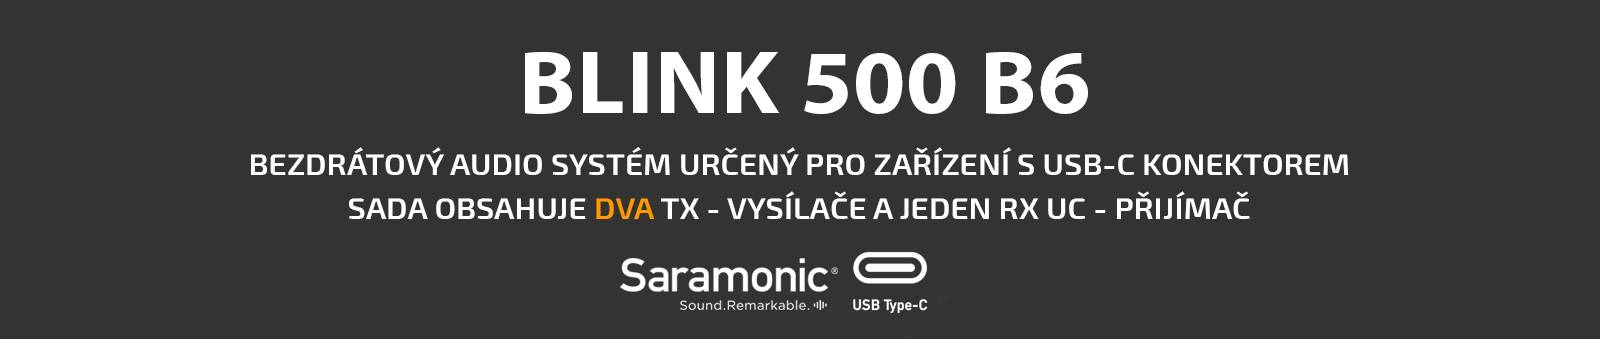 film-technika-blink-500-B6